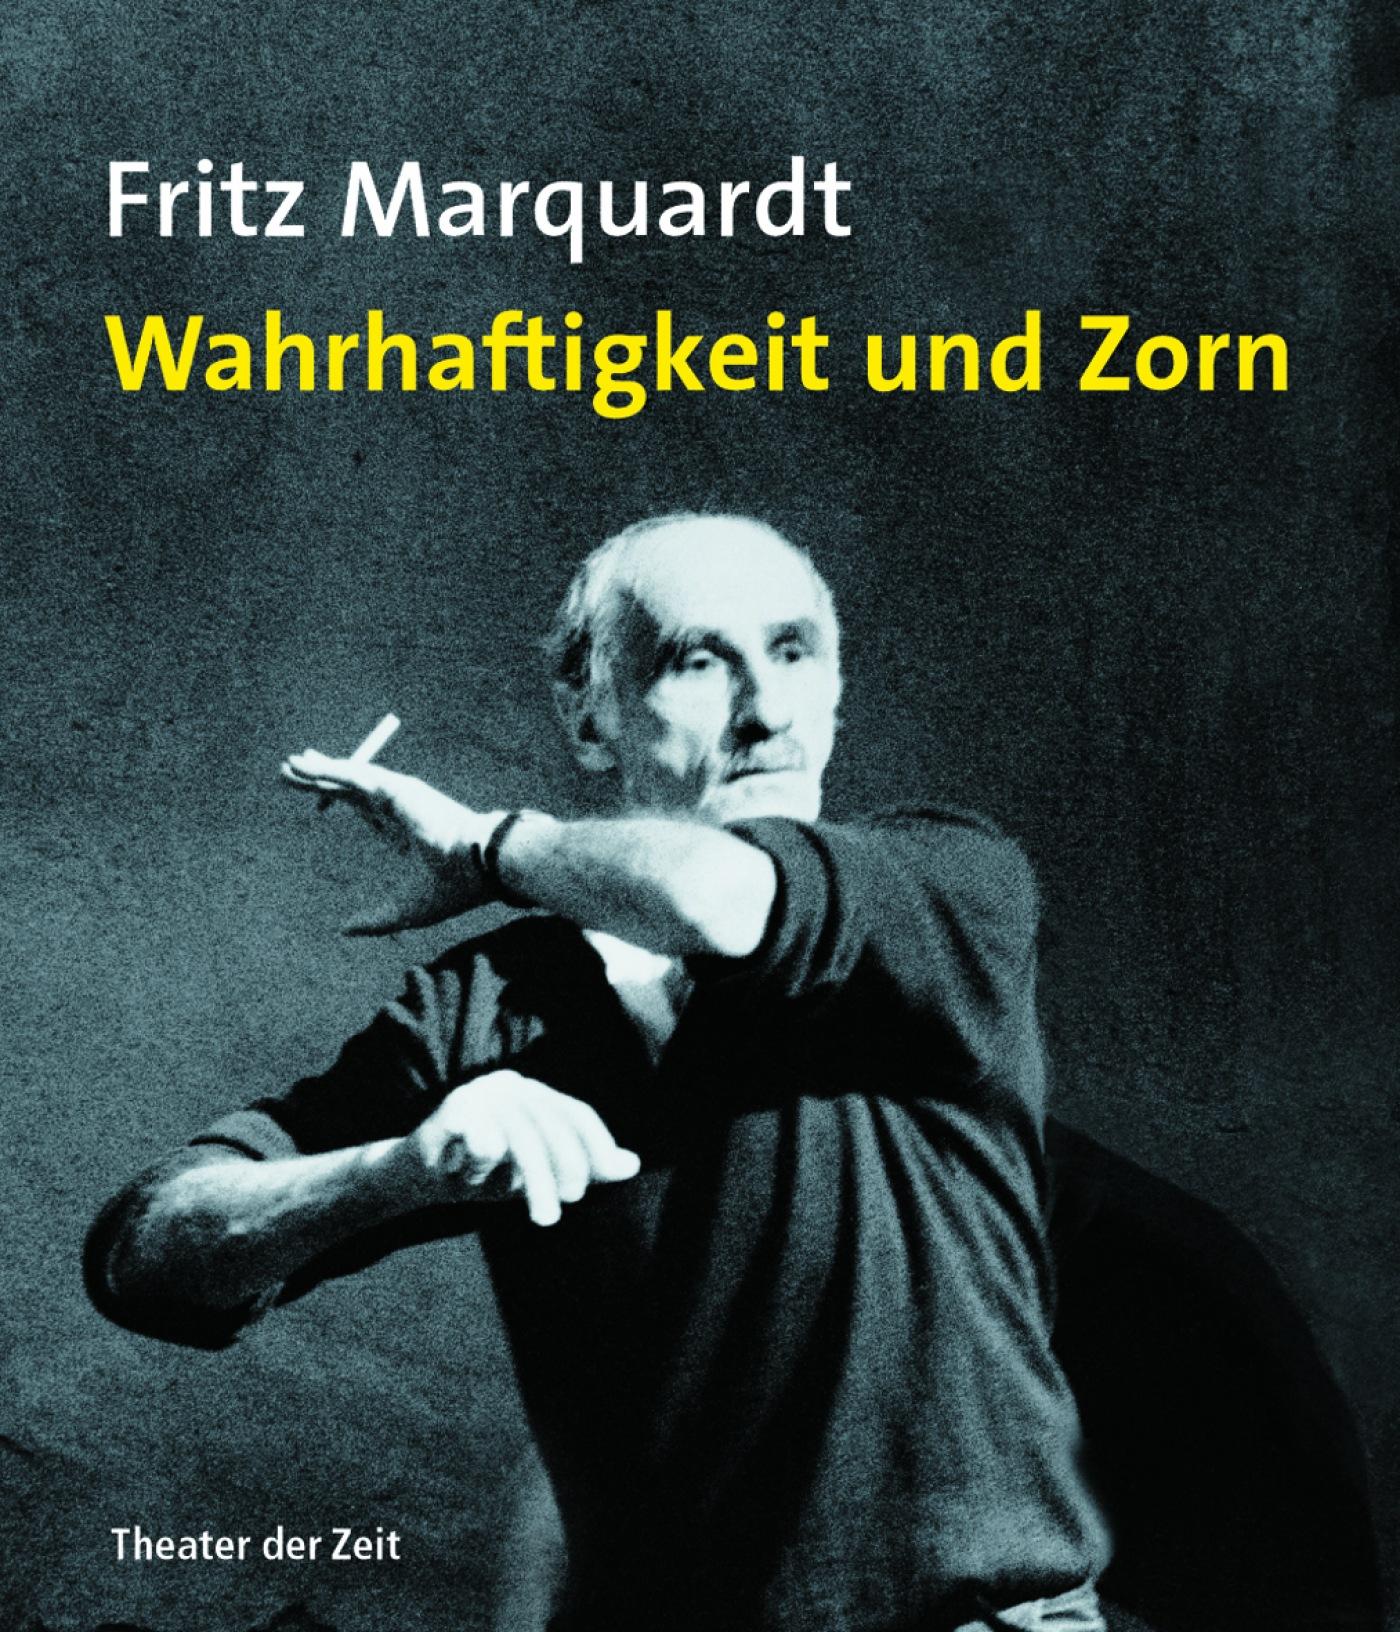 "Fritz Marquardt: Wahrhaftigkeit und Zorn"